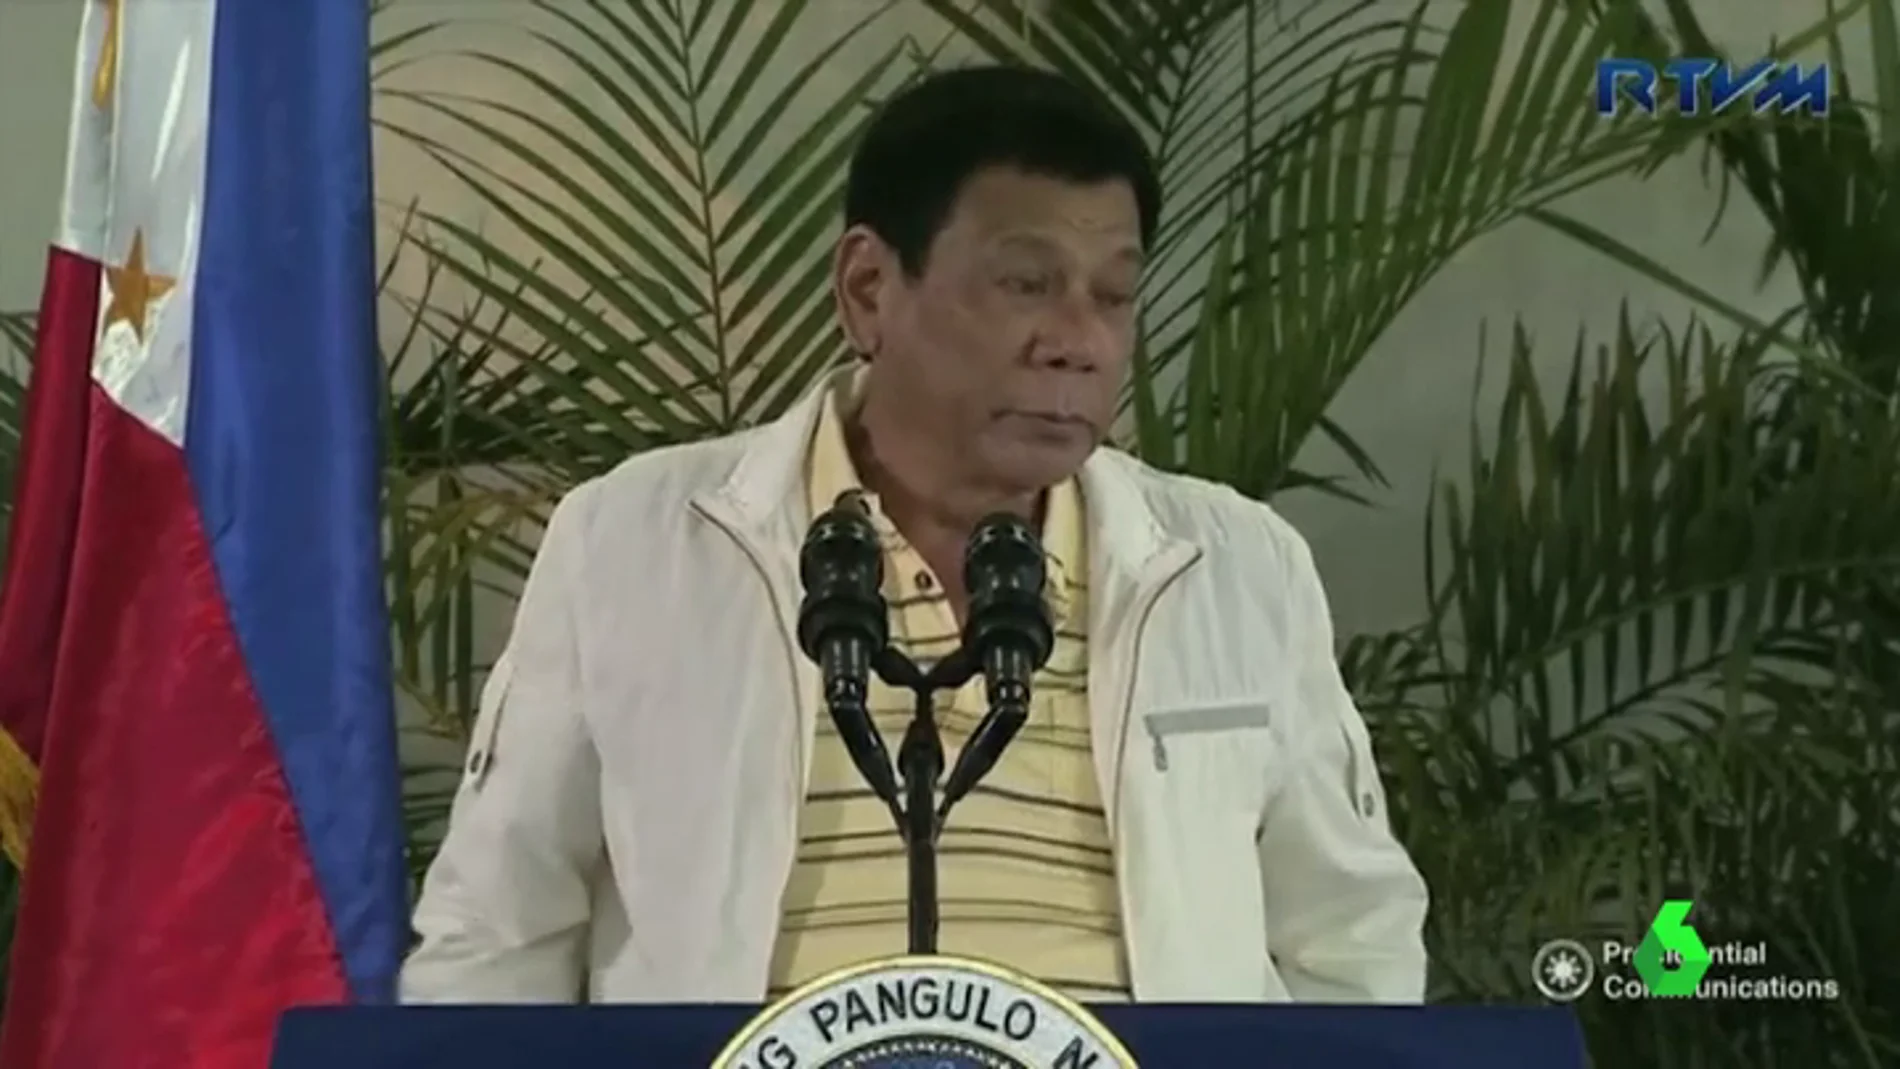 Frame 9.68017 de: El presidente filipino insulta a Obama antes de la cumbre en Laos donde coincidirán: "Hijo de puta, te voy a maldecir en la cumbre"